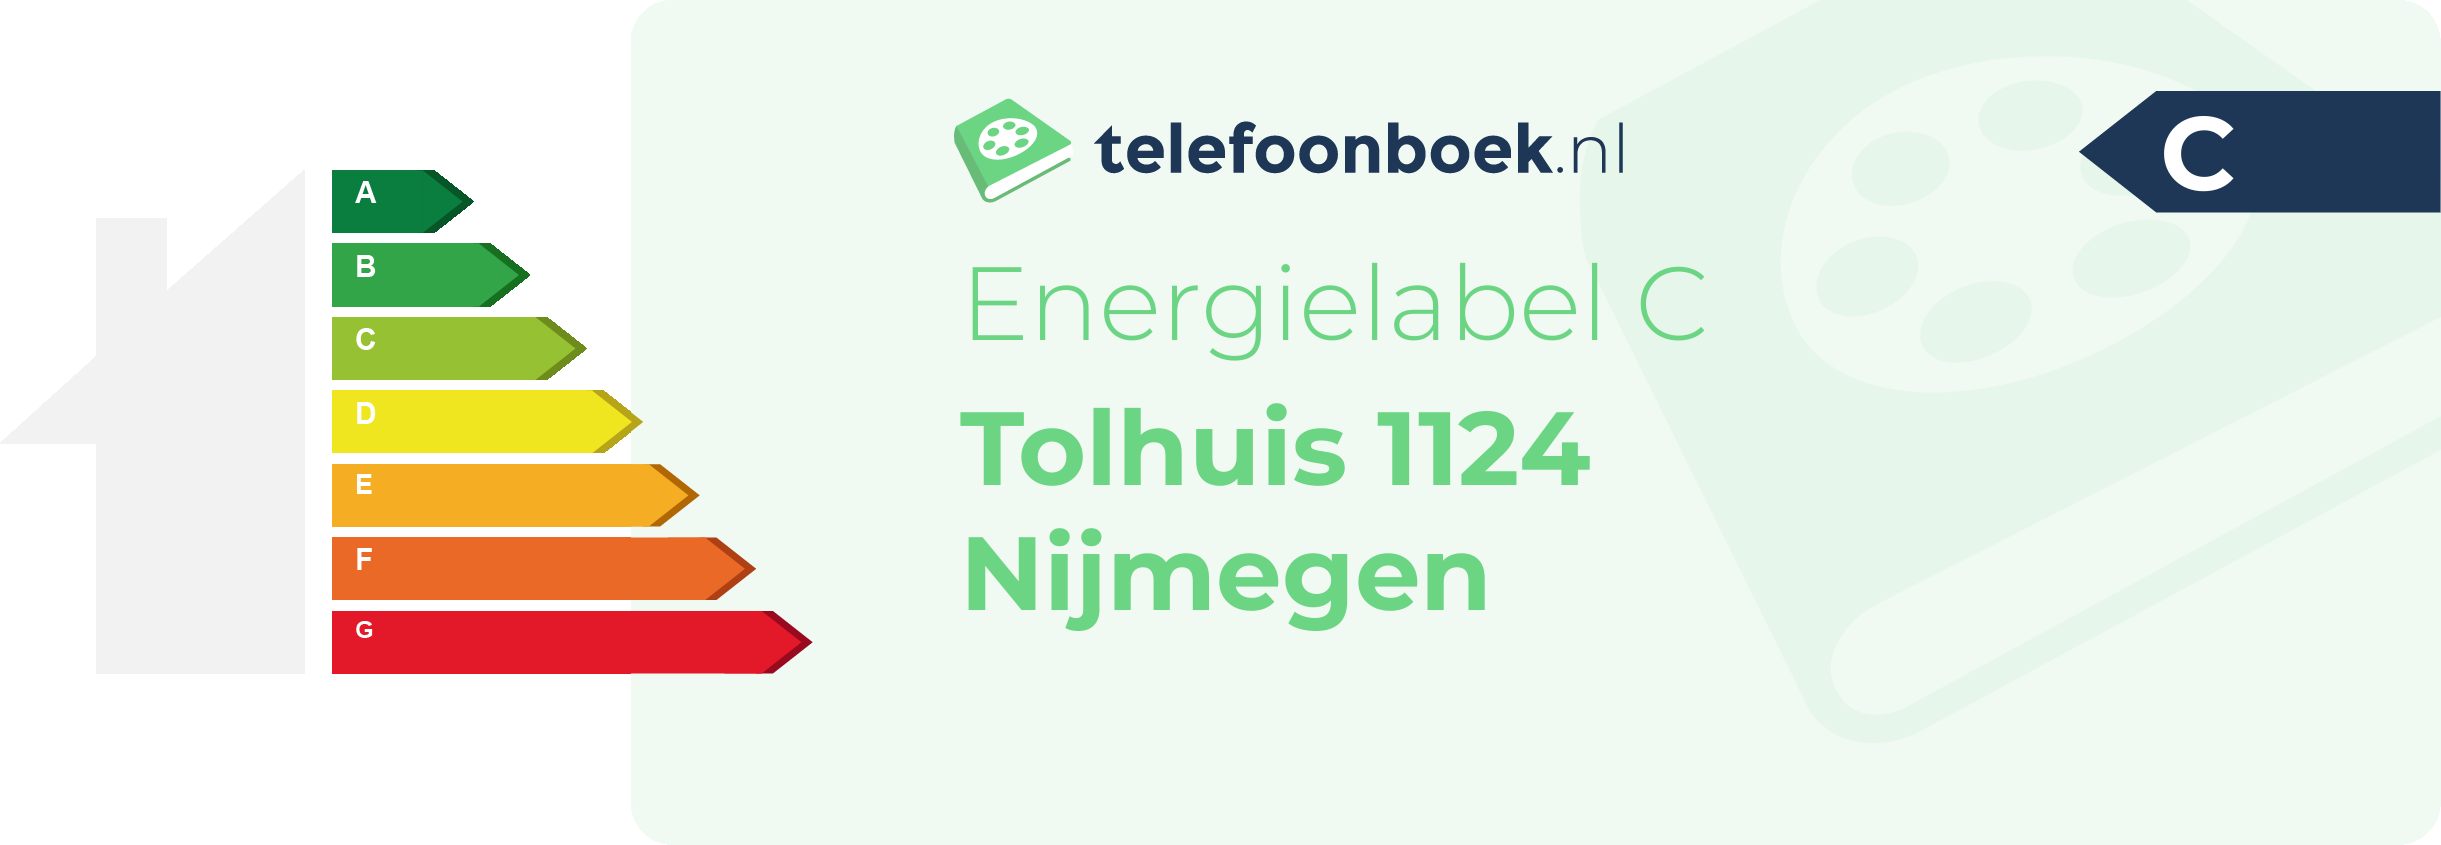 Energielabel Tolhuis 1124 Nijmegen